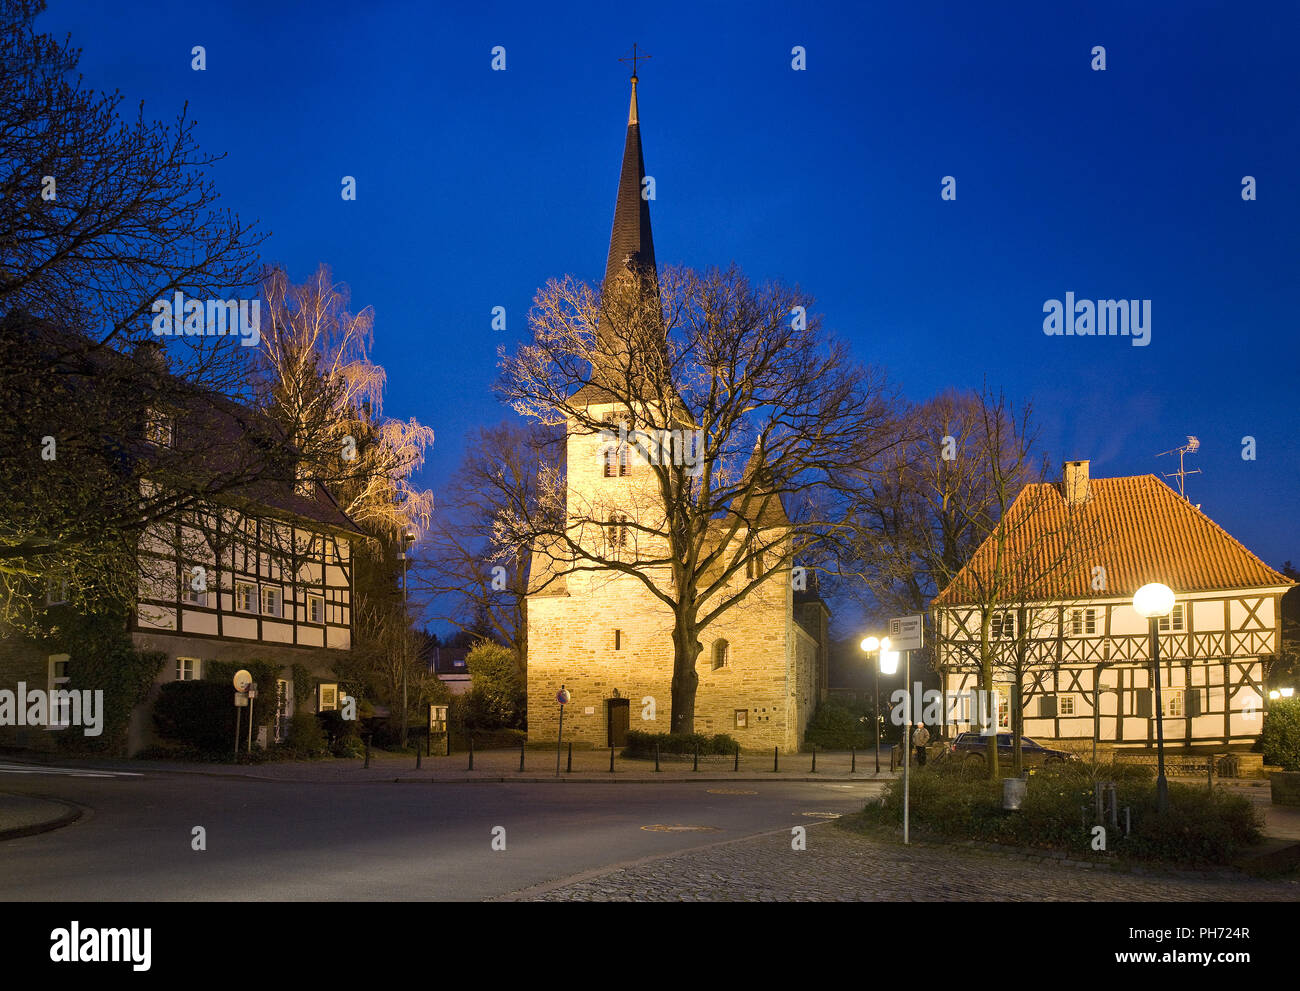 Villaggio storico centro, Wetter Wengern, Germania. Foto Stock